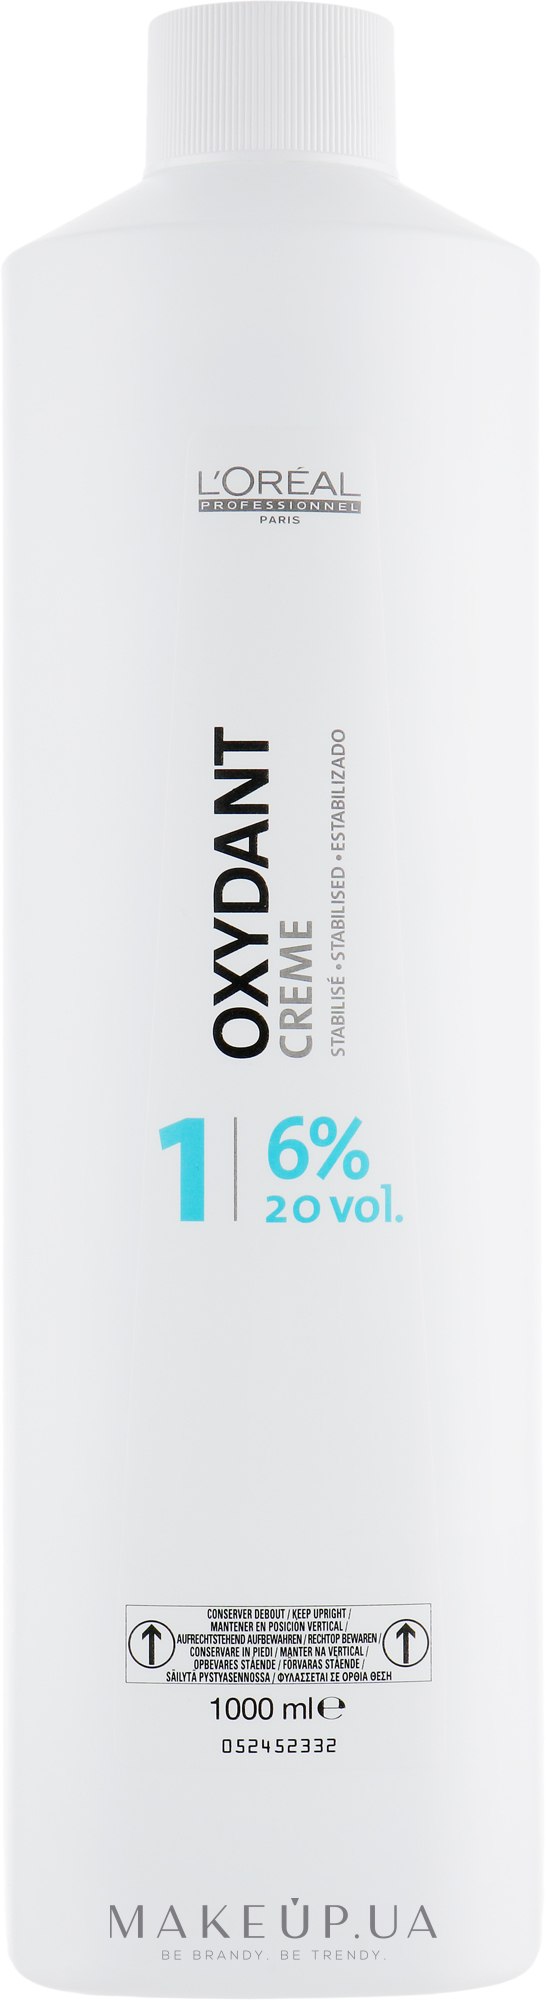 Косметический крем-пероксид - L'Oreal Professionnel Oxydant 1 (6%) — фото 1000ml